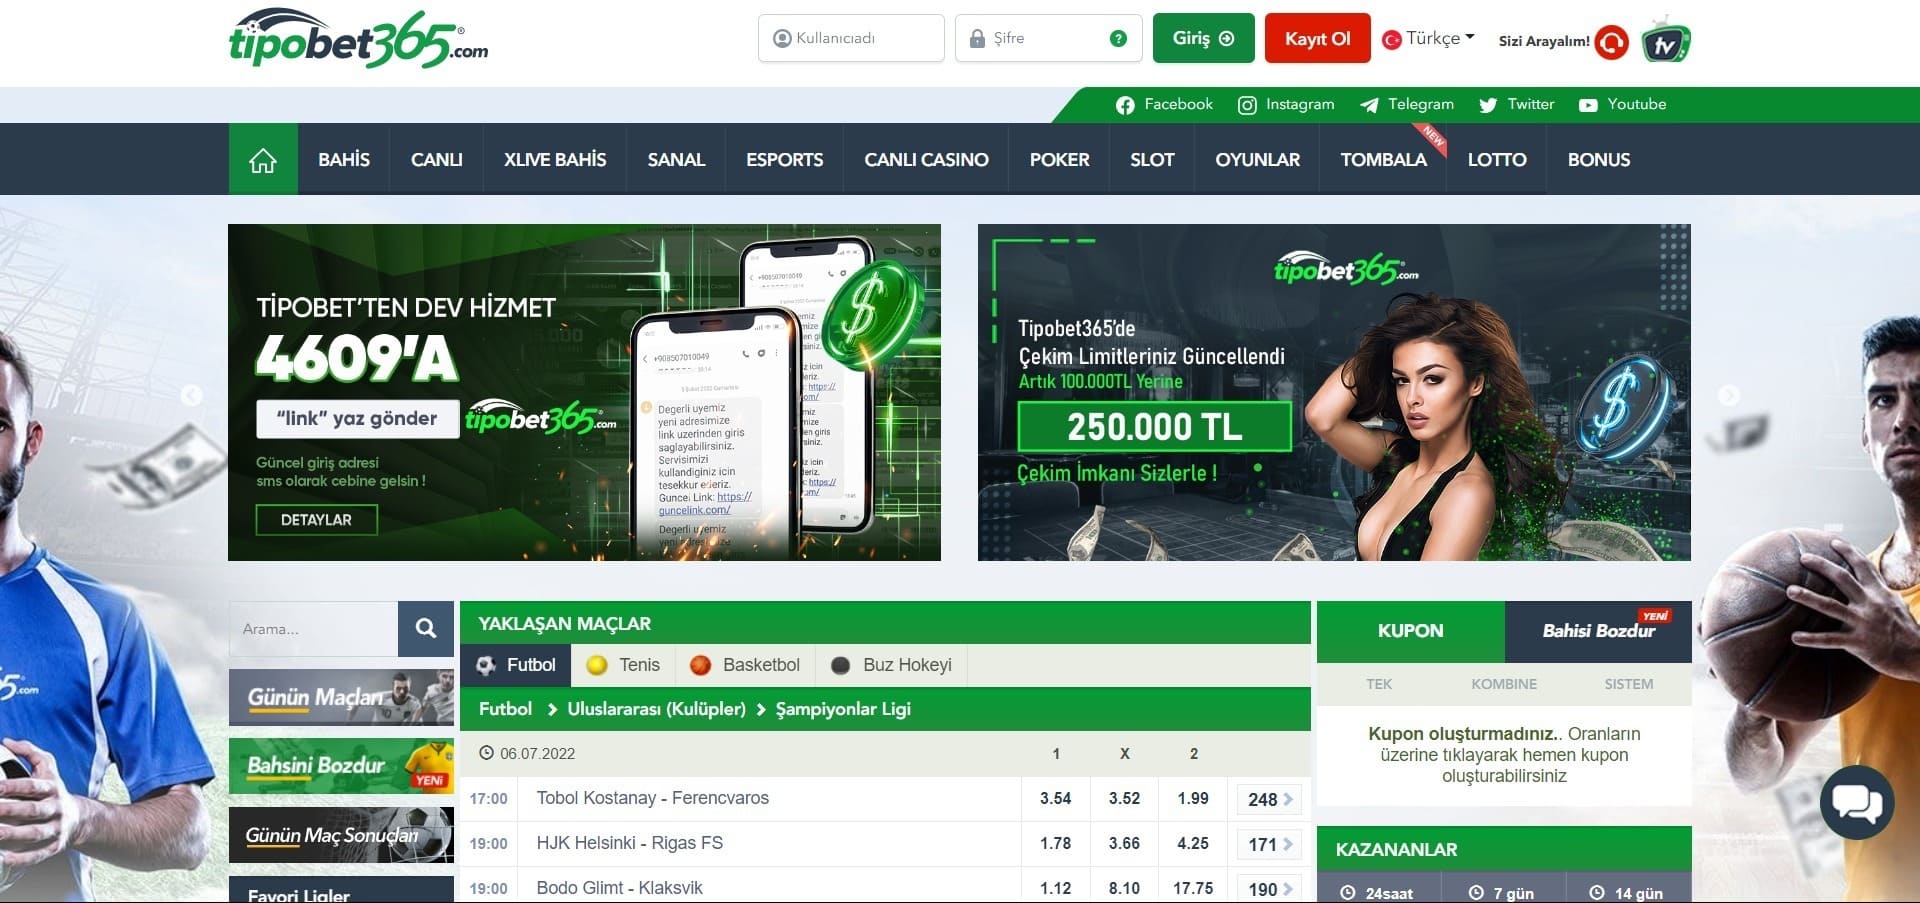 Tipobet Casino'nun resmi web sitesi